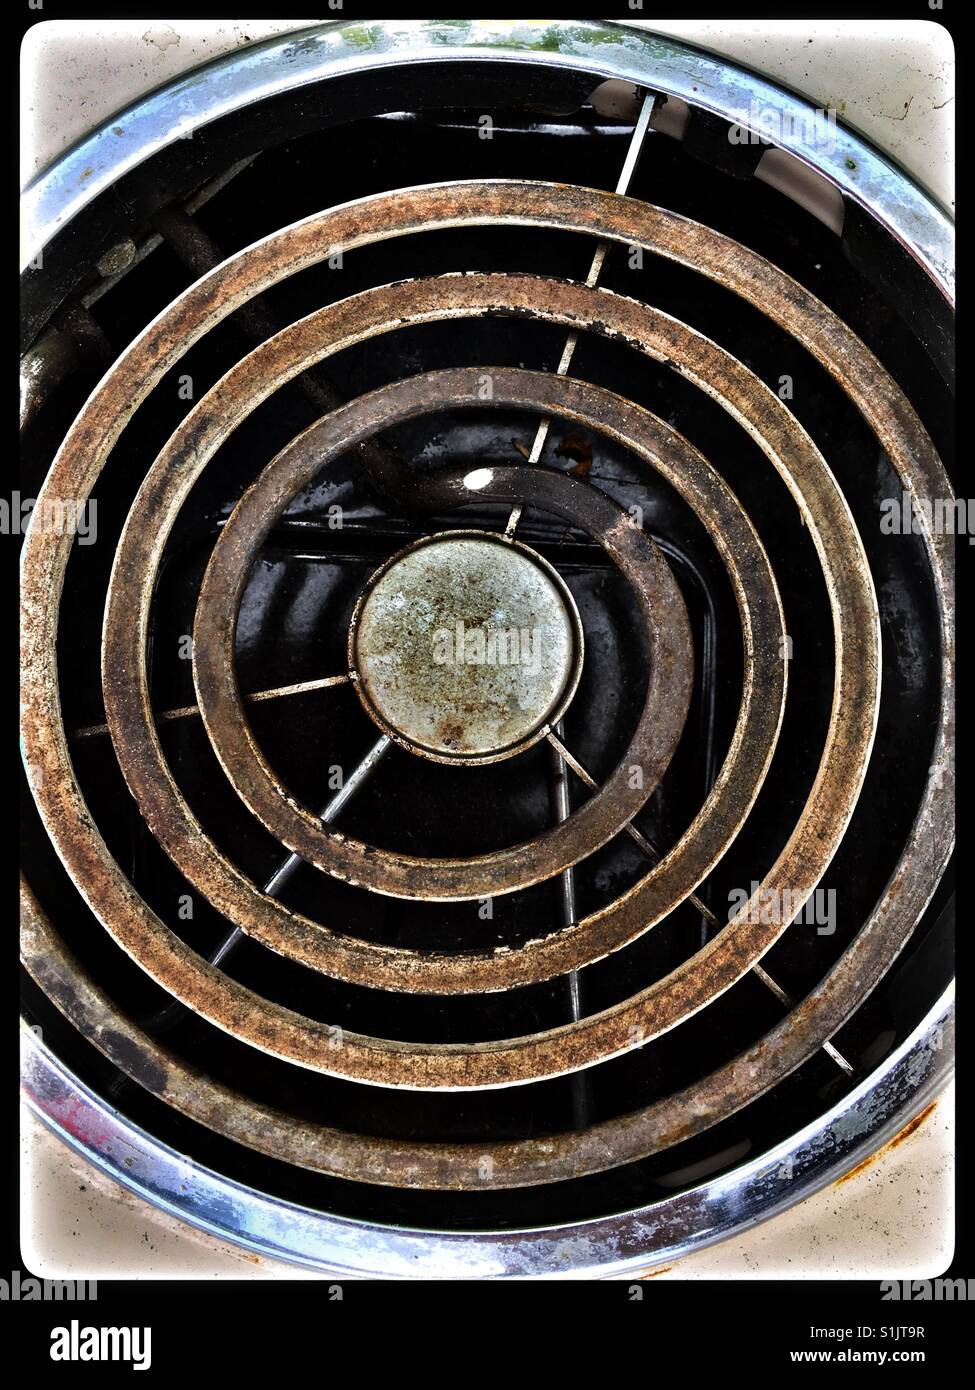 Vintage cuisinière électrique plaque chauffante. Banque D'Images